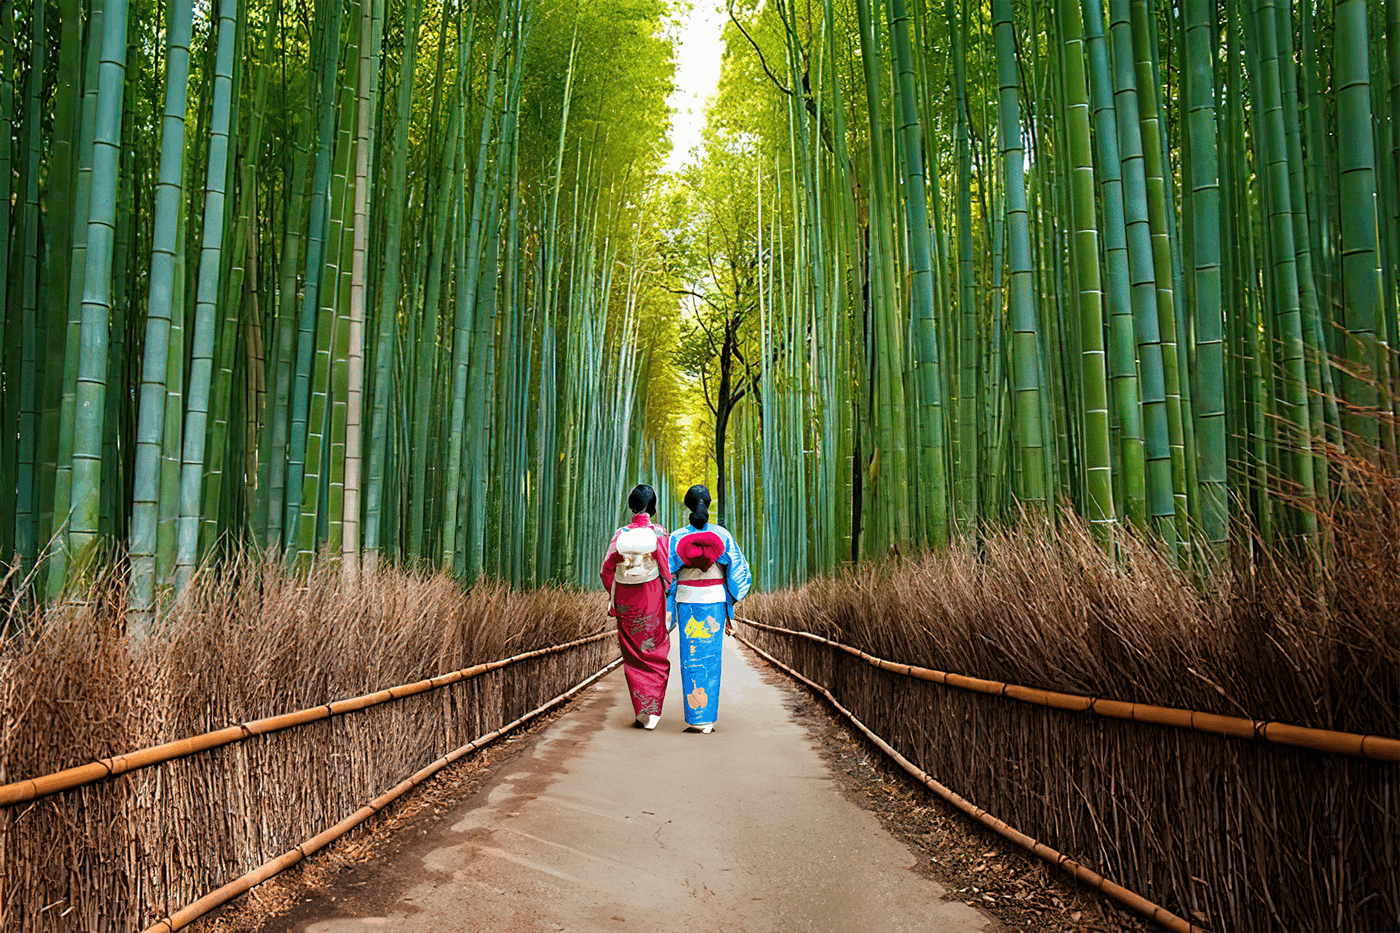 Höhepunkte der Arashiyama-Wanderung mit Bambuswald und Affenpark